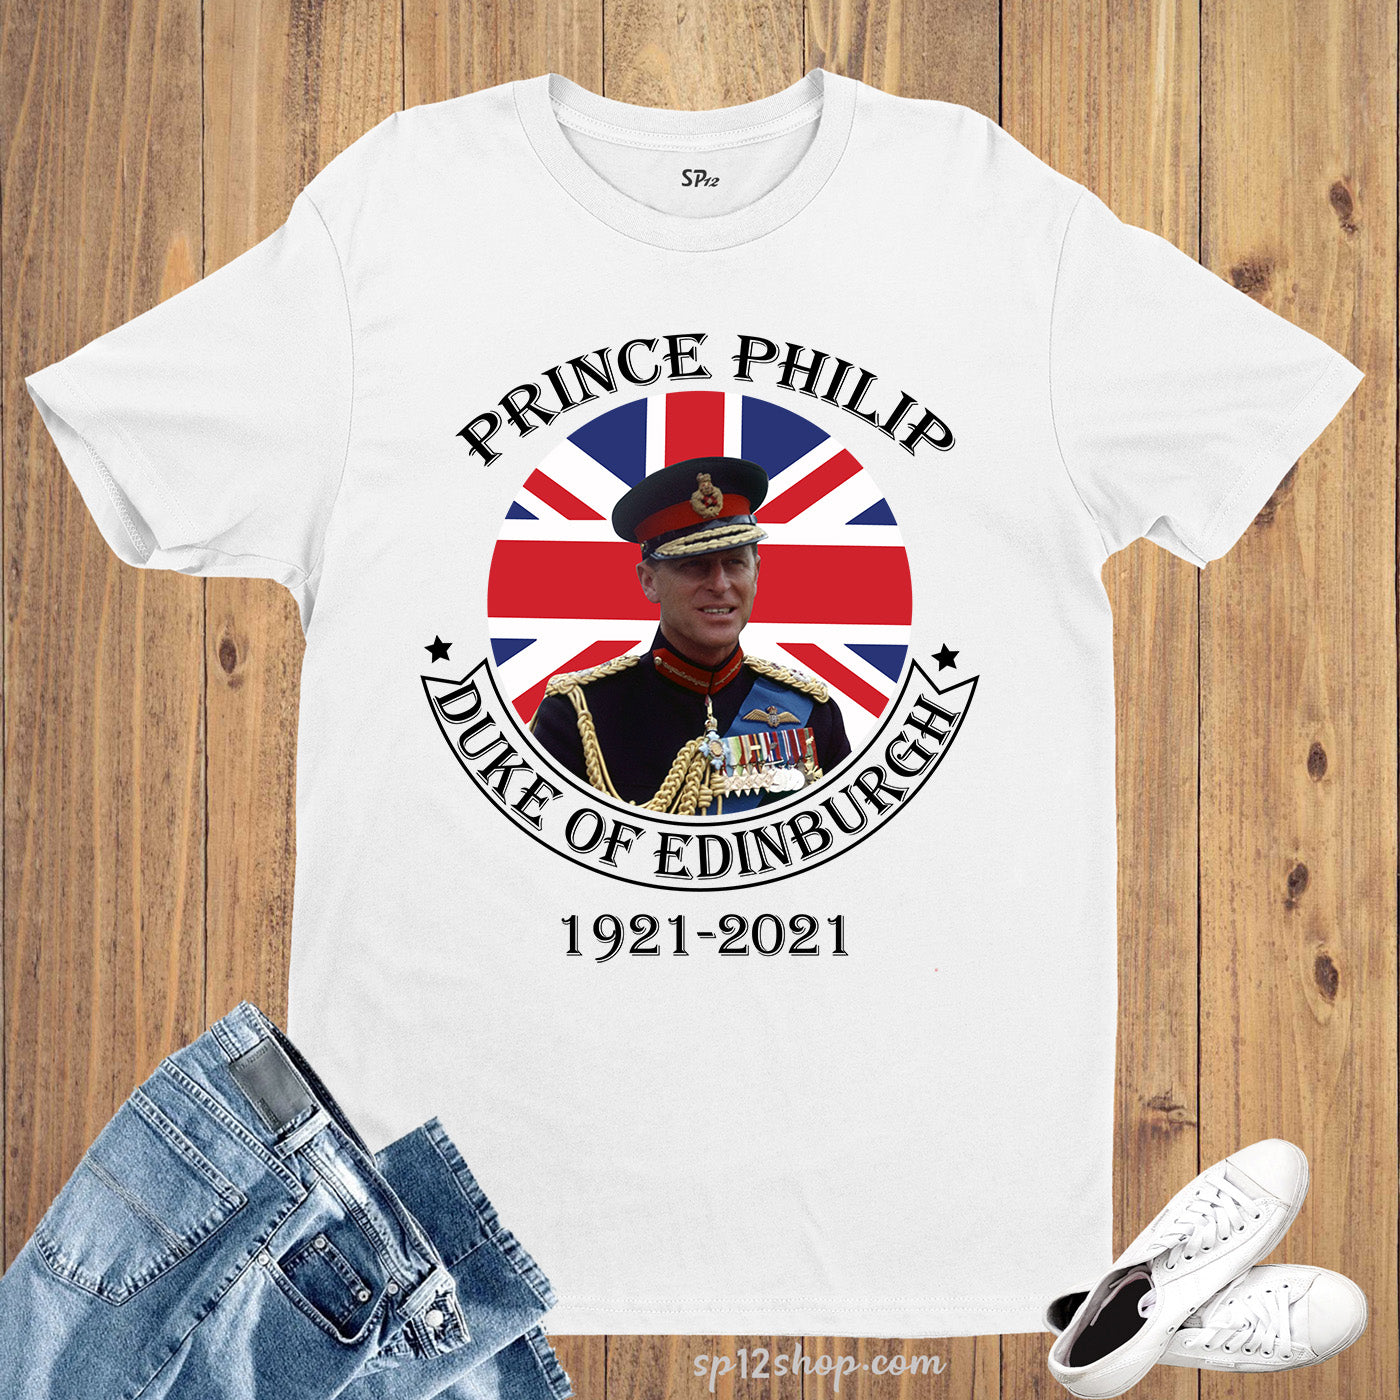 Duke of Edinburgh - Prince Philip T Shirt